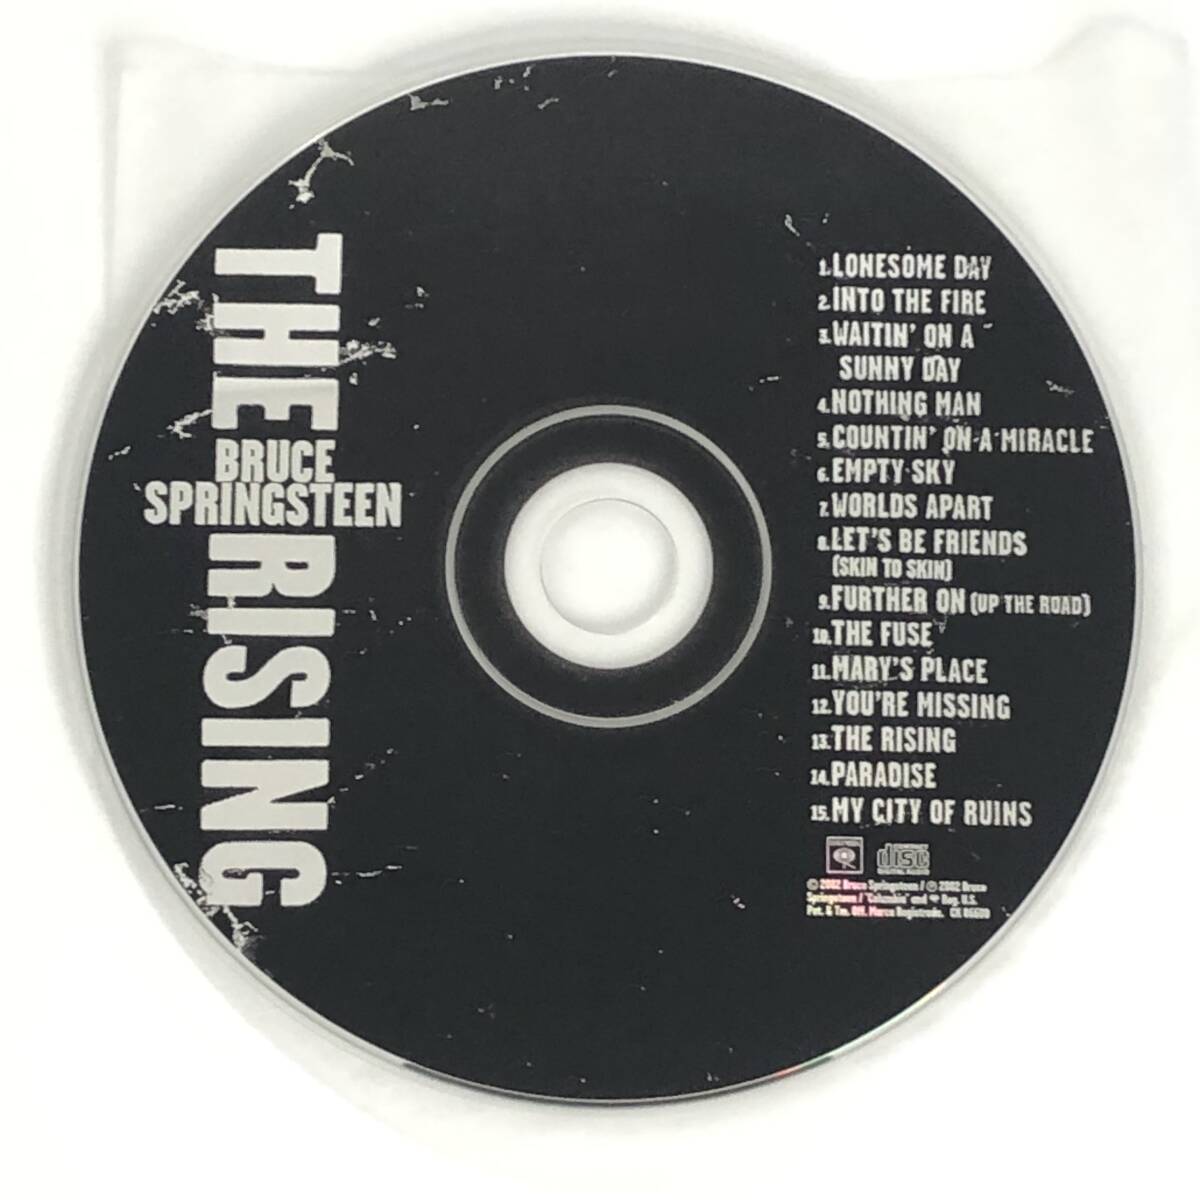 US初回限定盤 中古CD Bruce Springsteen The Rising ブルース・スプリンスティーン ザ・ライジング Columbia CK 86820 個人所有 B_画像6